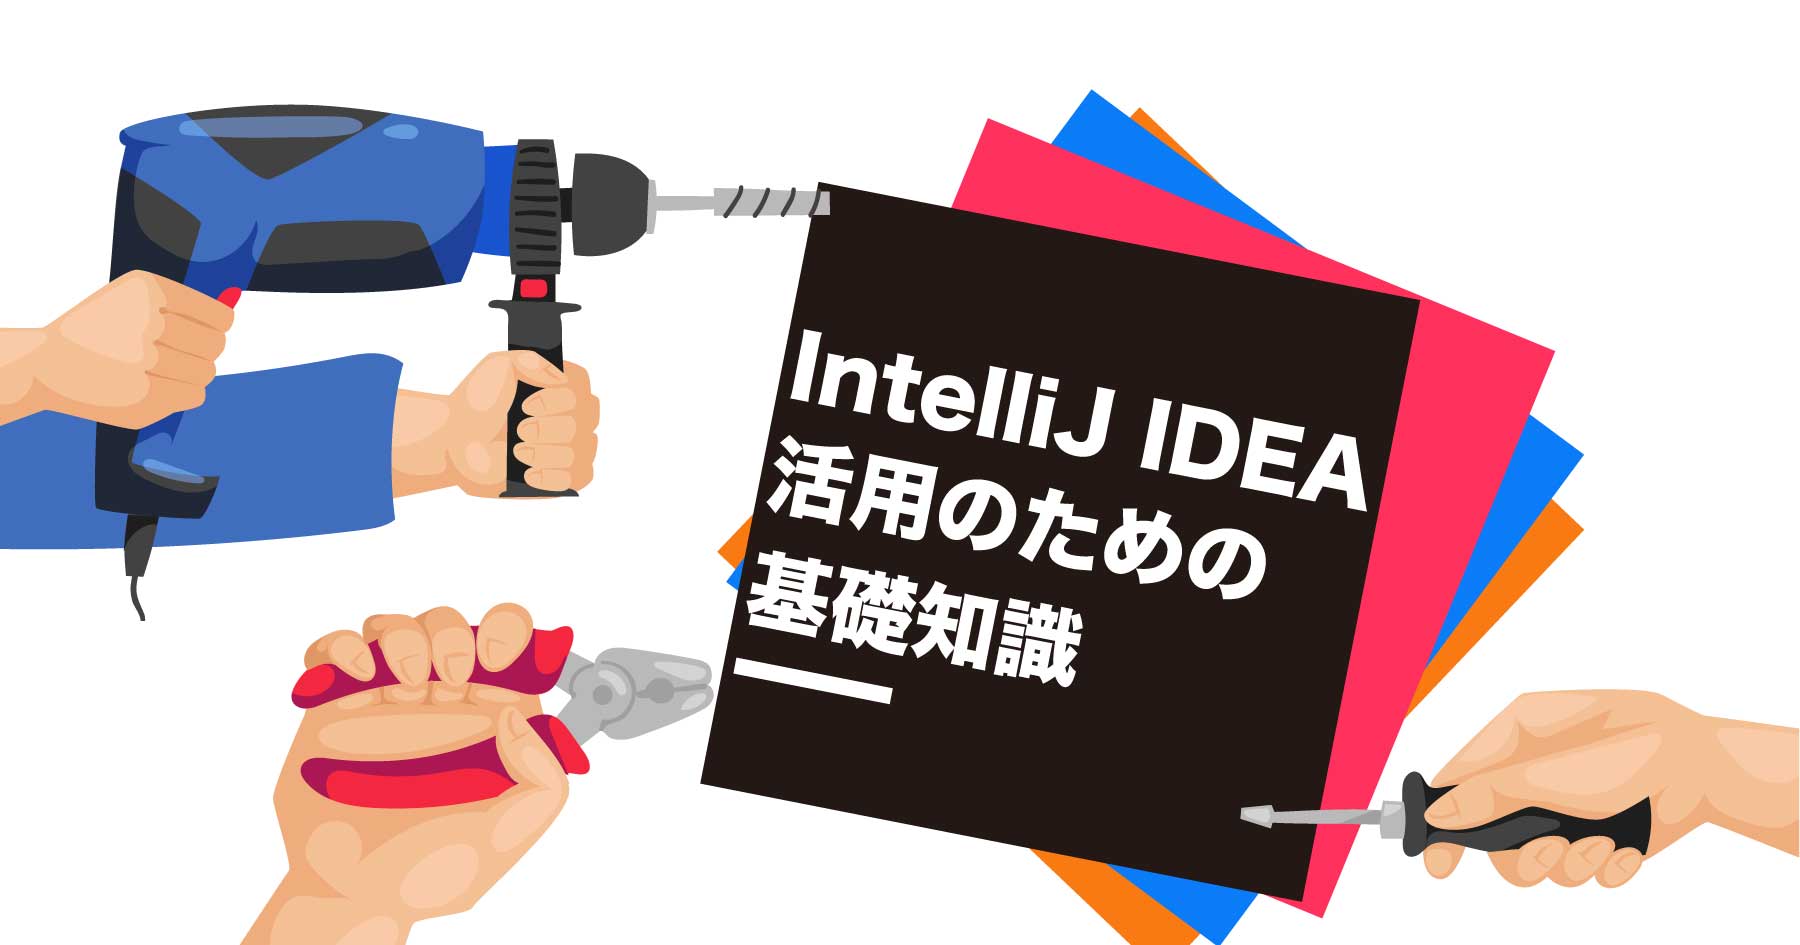 IntelliJ IDEAをもっと便利で使いやすく！ つまずきがちな設定や、便利な機能を細かに解説します。